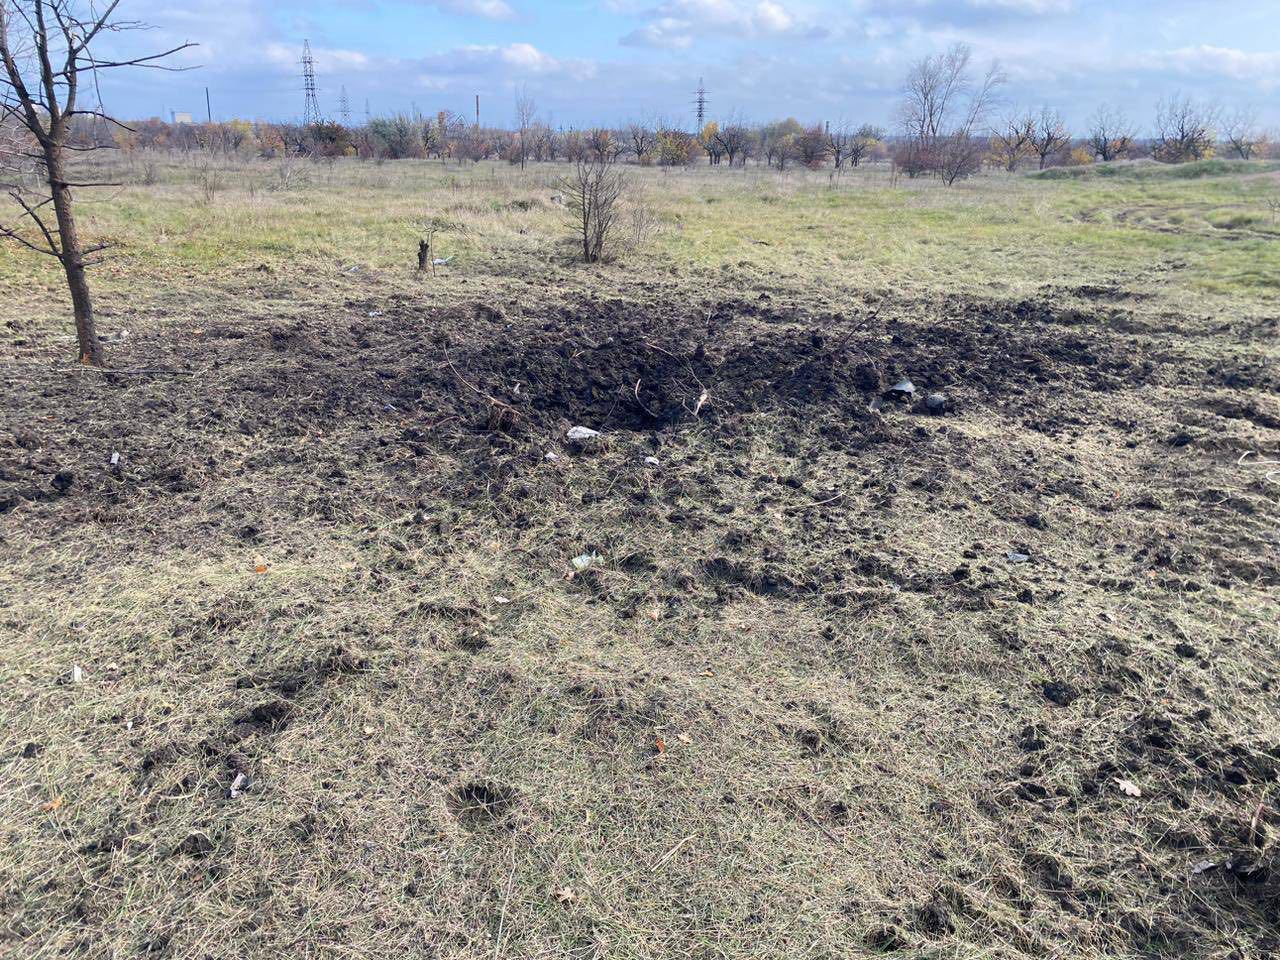 ❗️Около часа назад две ракеты, вероятно, Х-31 взорвались вблизи одного из населенных пунктов вольнянщины, — глава Запорожской ОВА Александр Старух